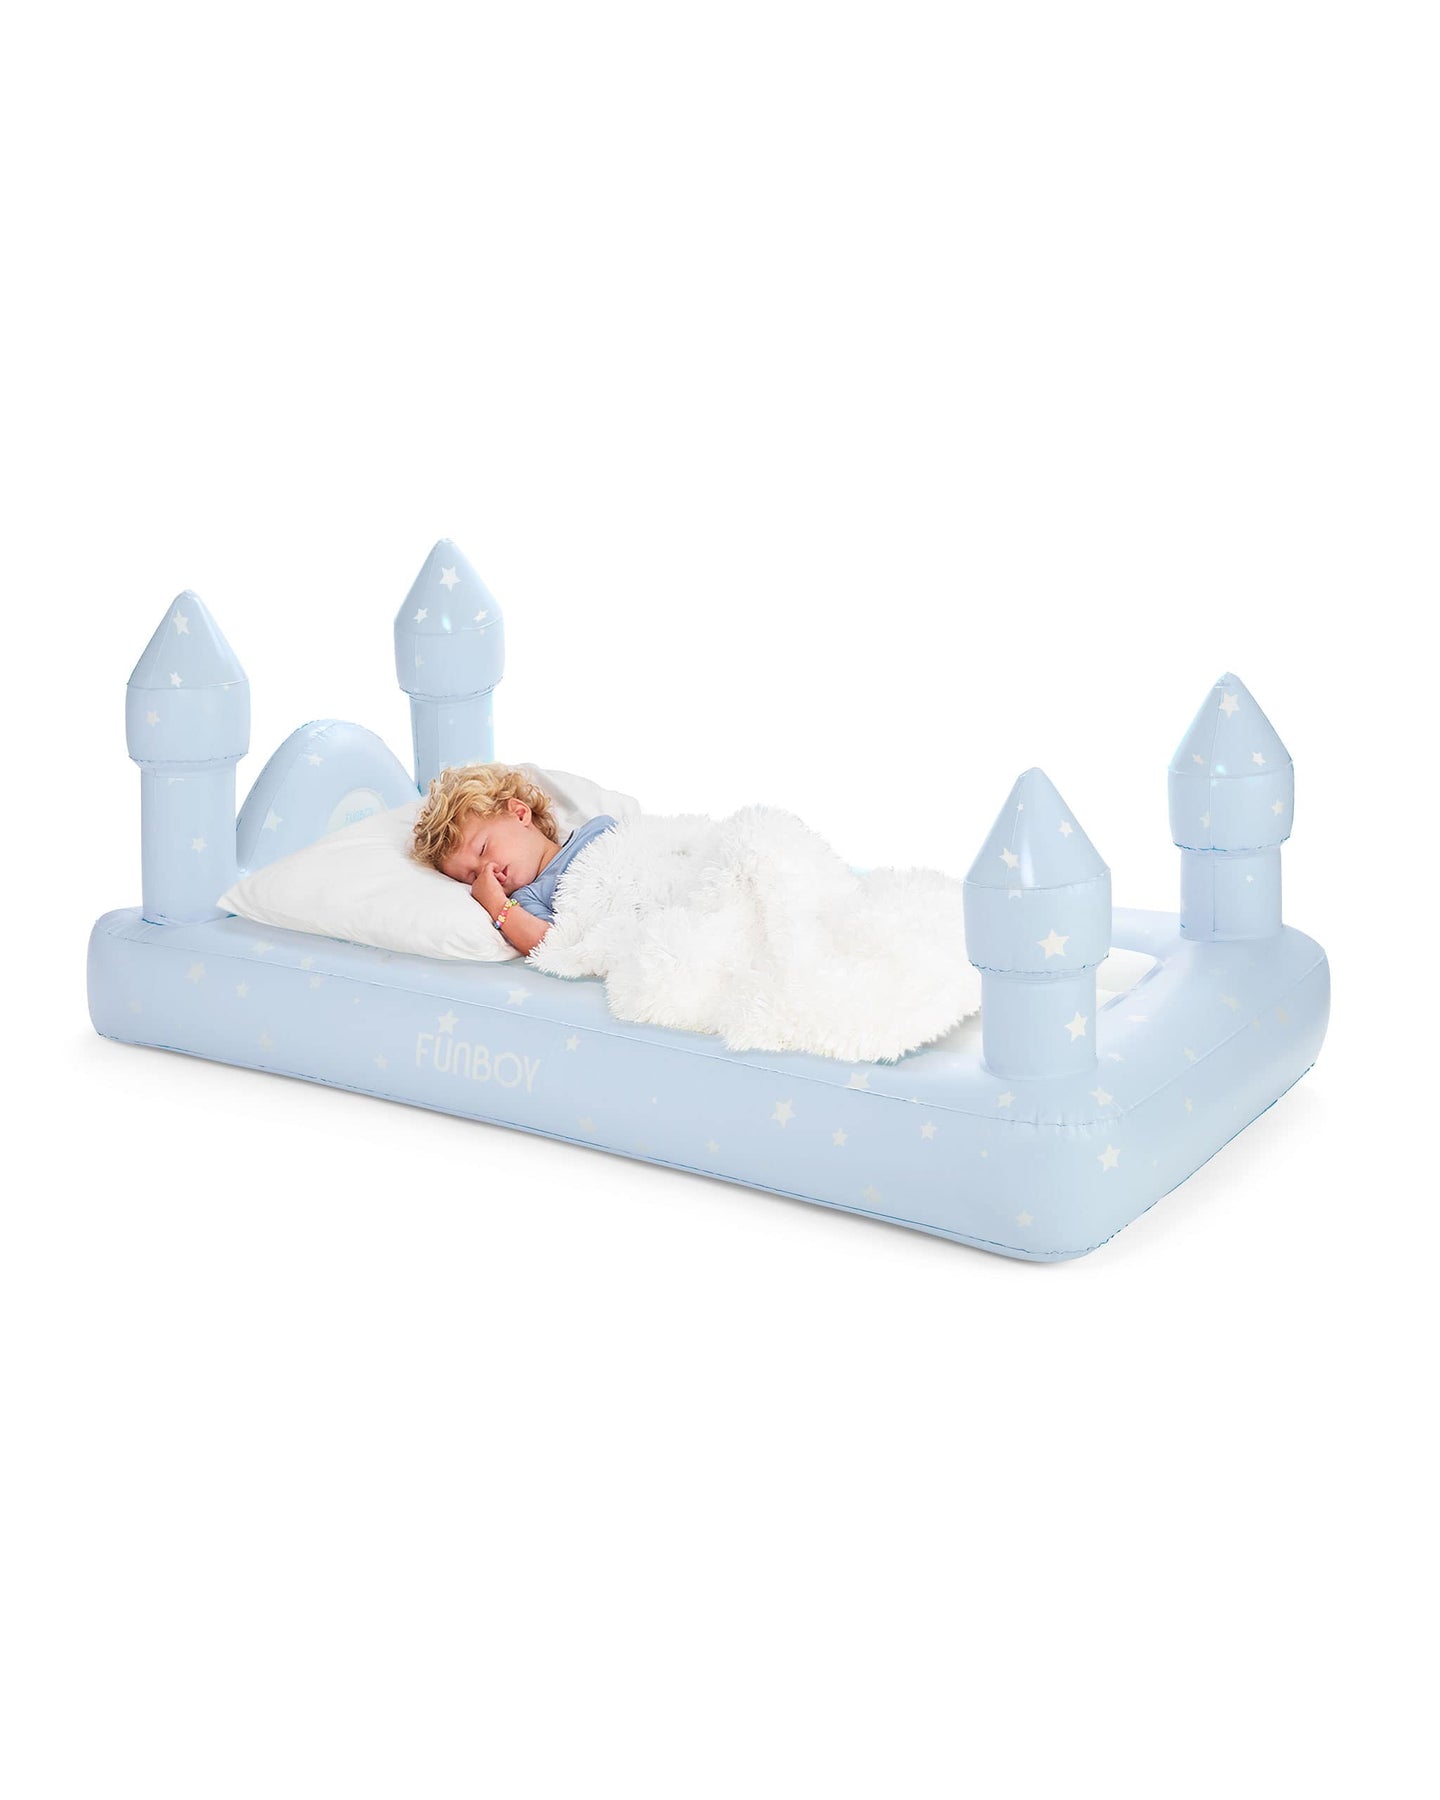 Blue Castle Air Mattress - Kids Sleepover Bed